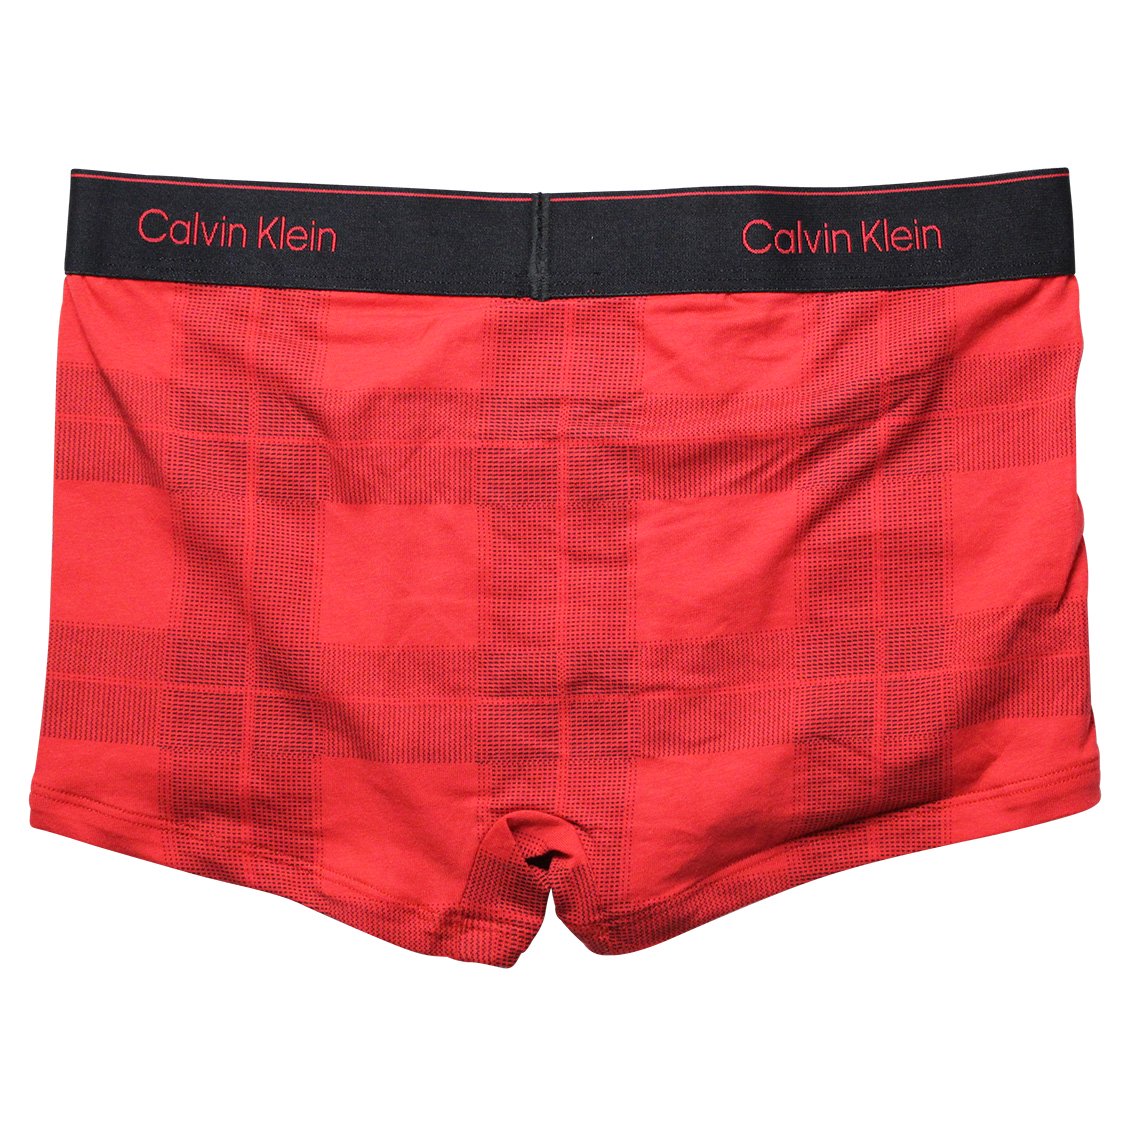 Calvin Klein(カルバンクライン)[NB3359-620]:ボクサーパンツ,男性下着